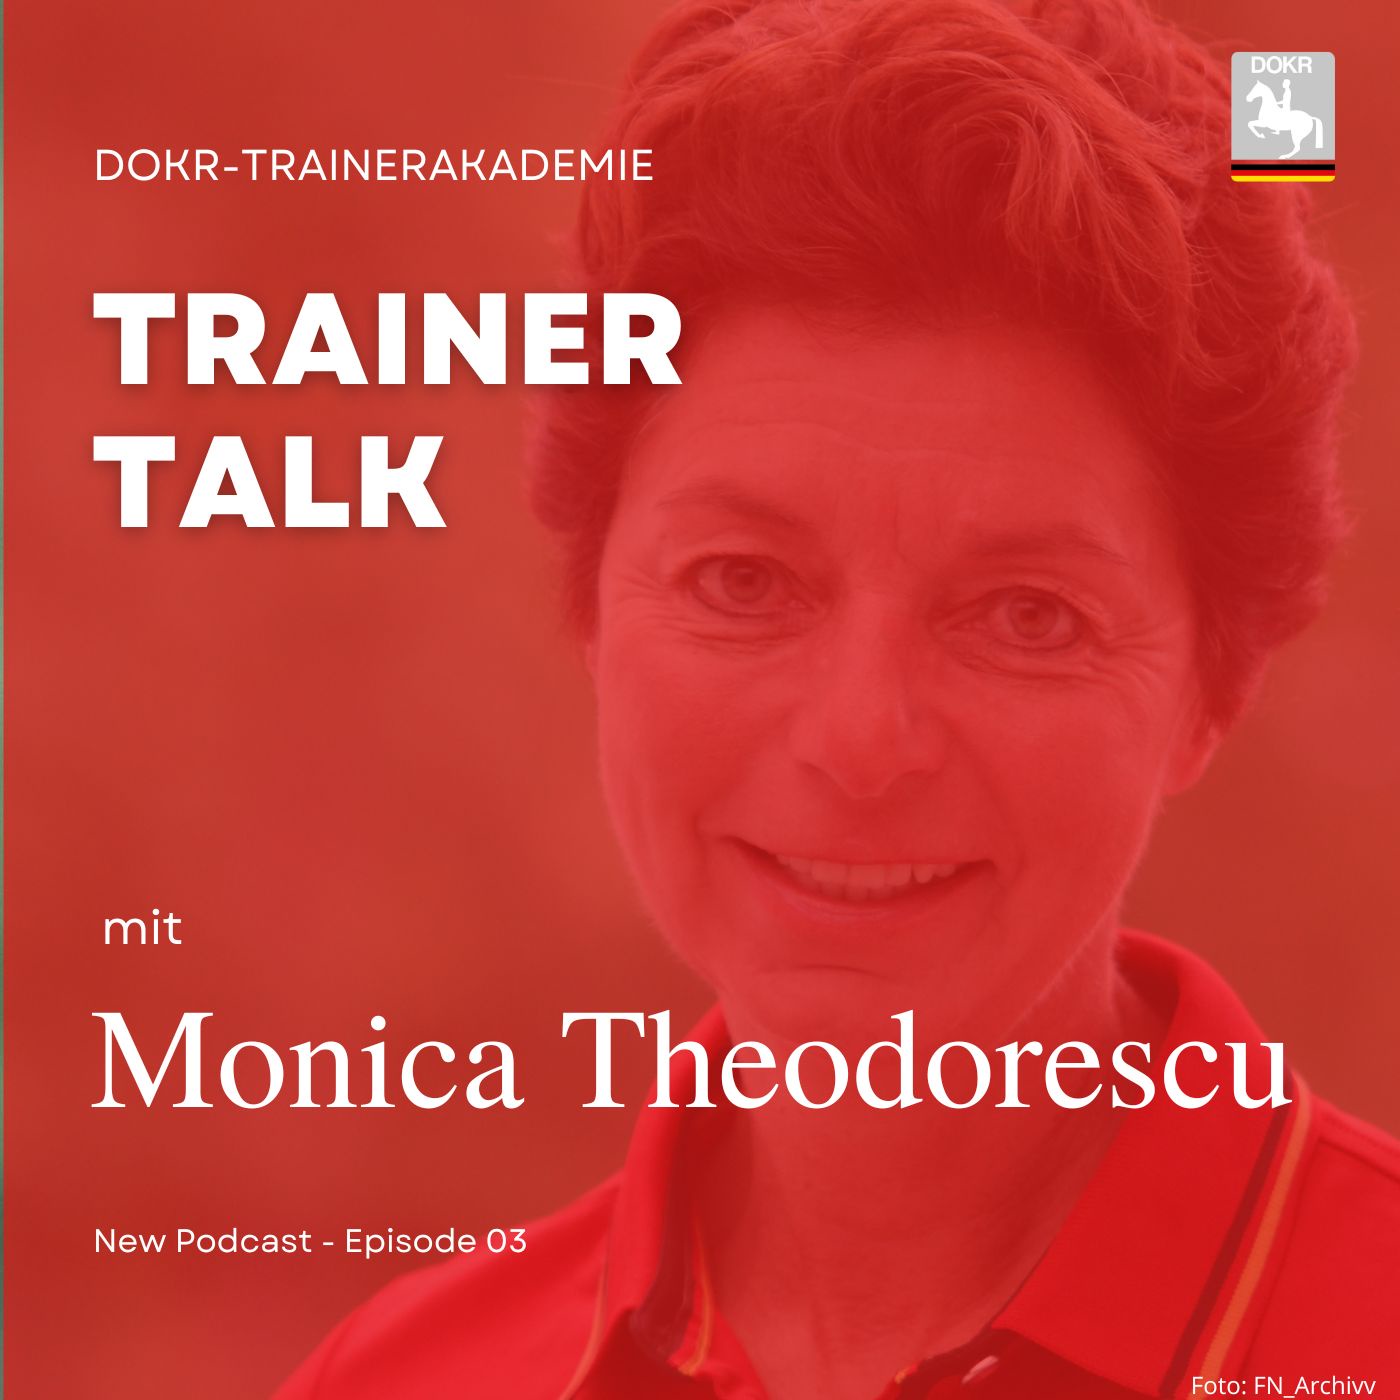 Bundestrainerin Dressur Monica Theodorescu im Trainer-Talk der DOKR-Trainerakademie